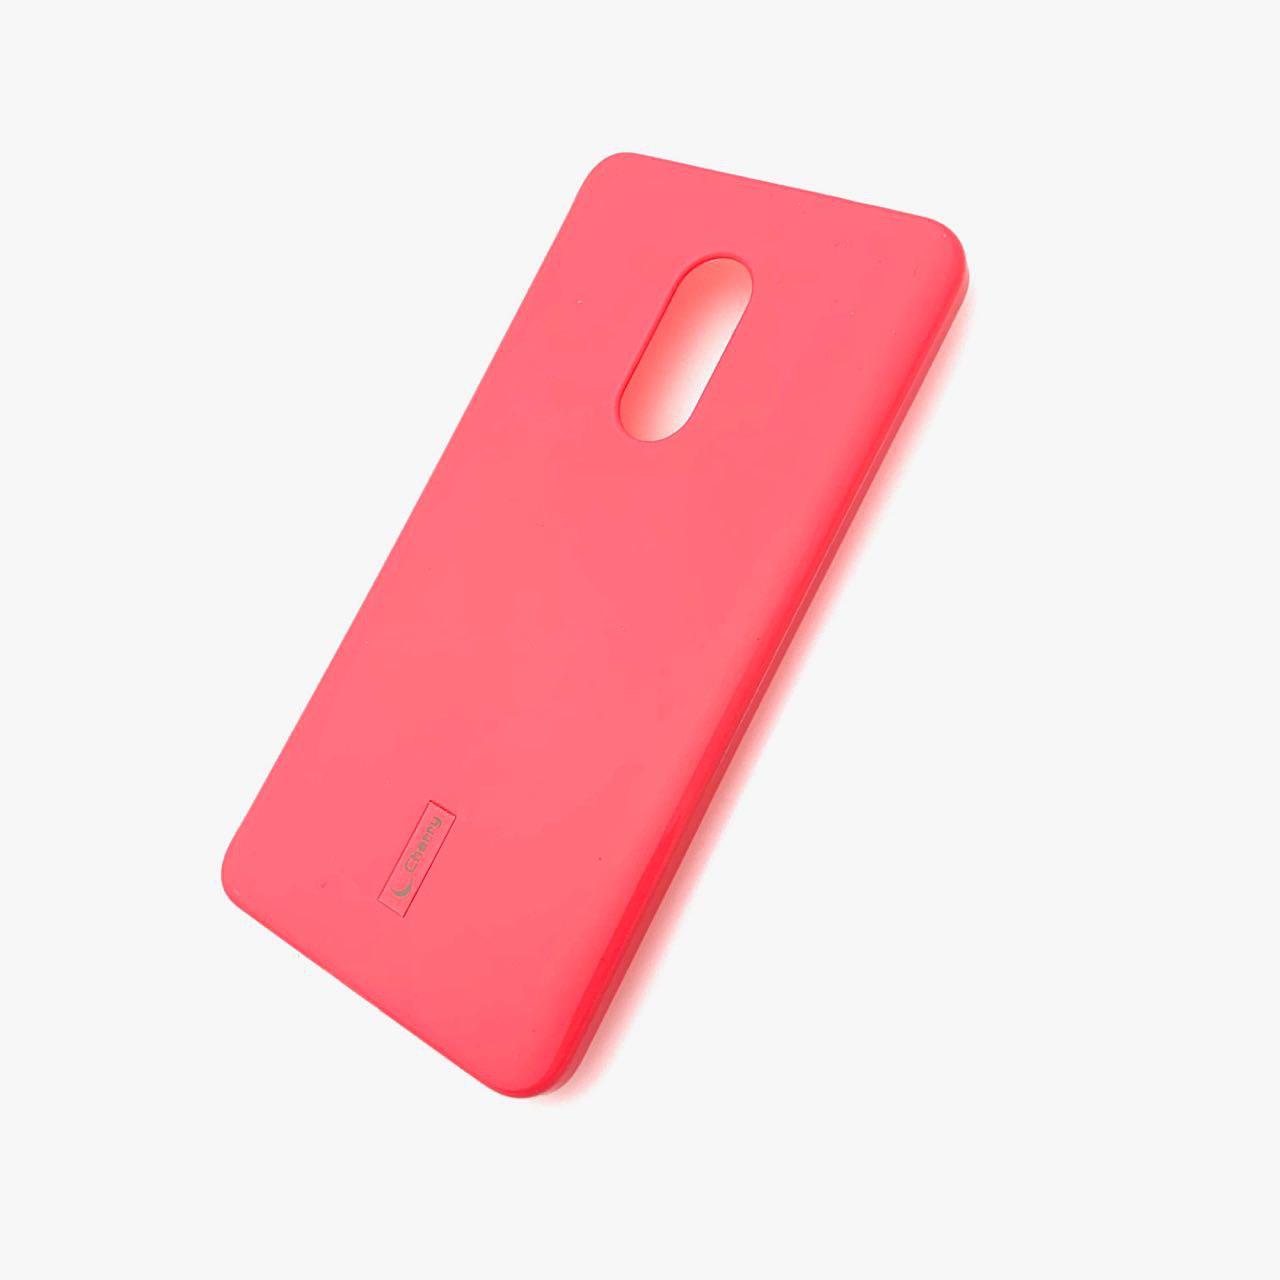 Чехол накладка для XIAOMI REDMI NOTE 4X, силикон, цвет розовый.